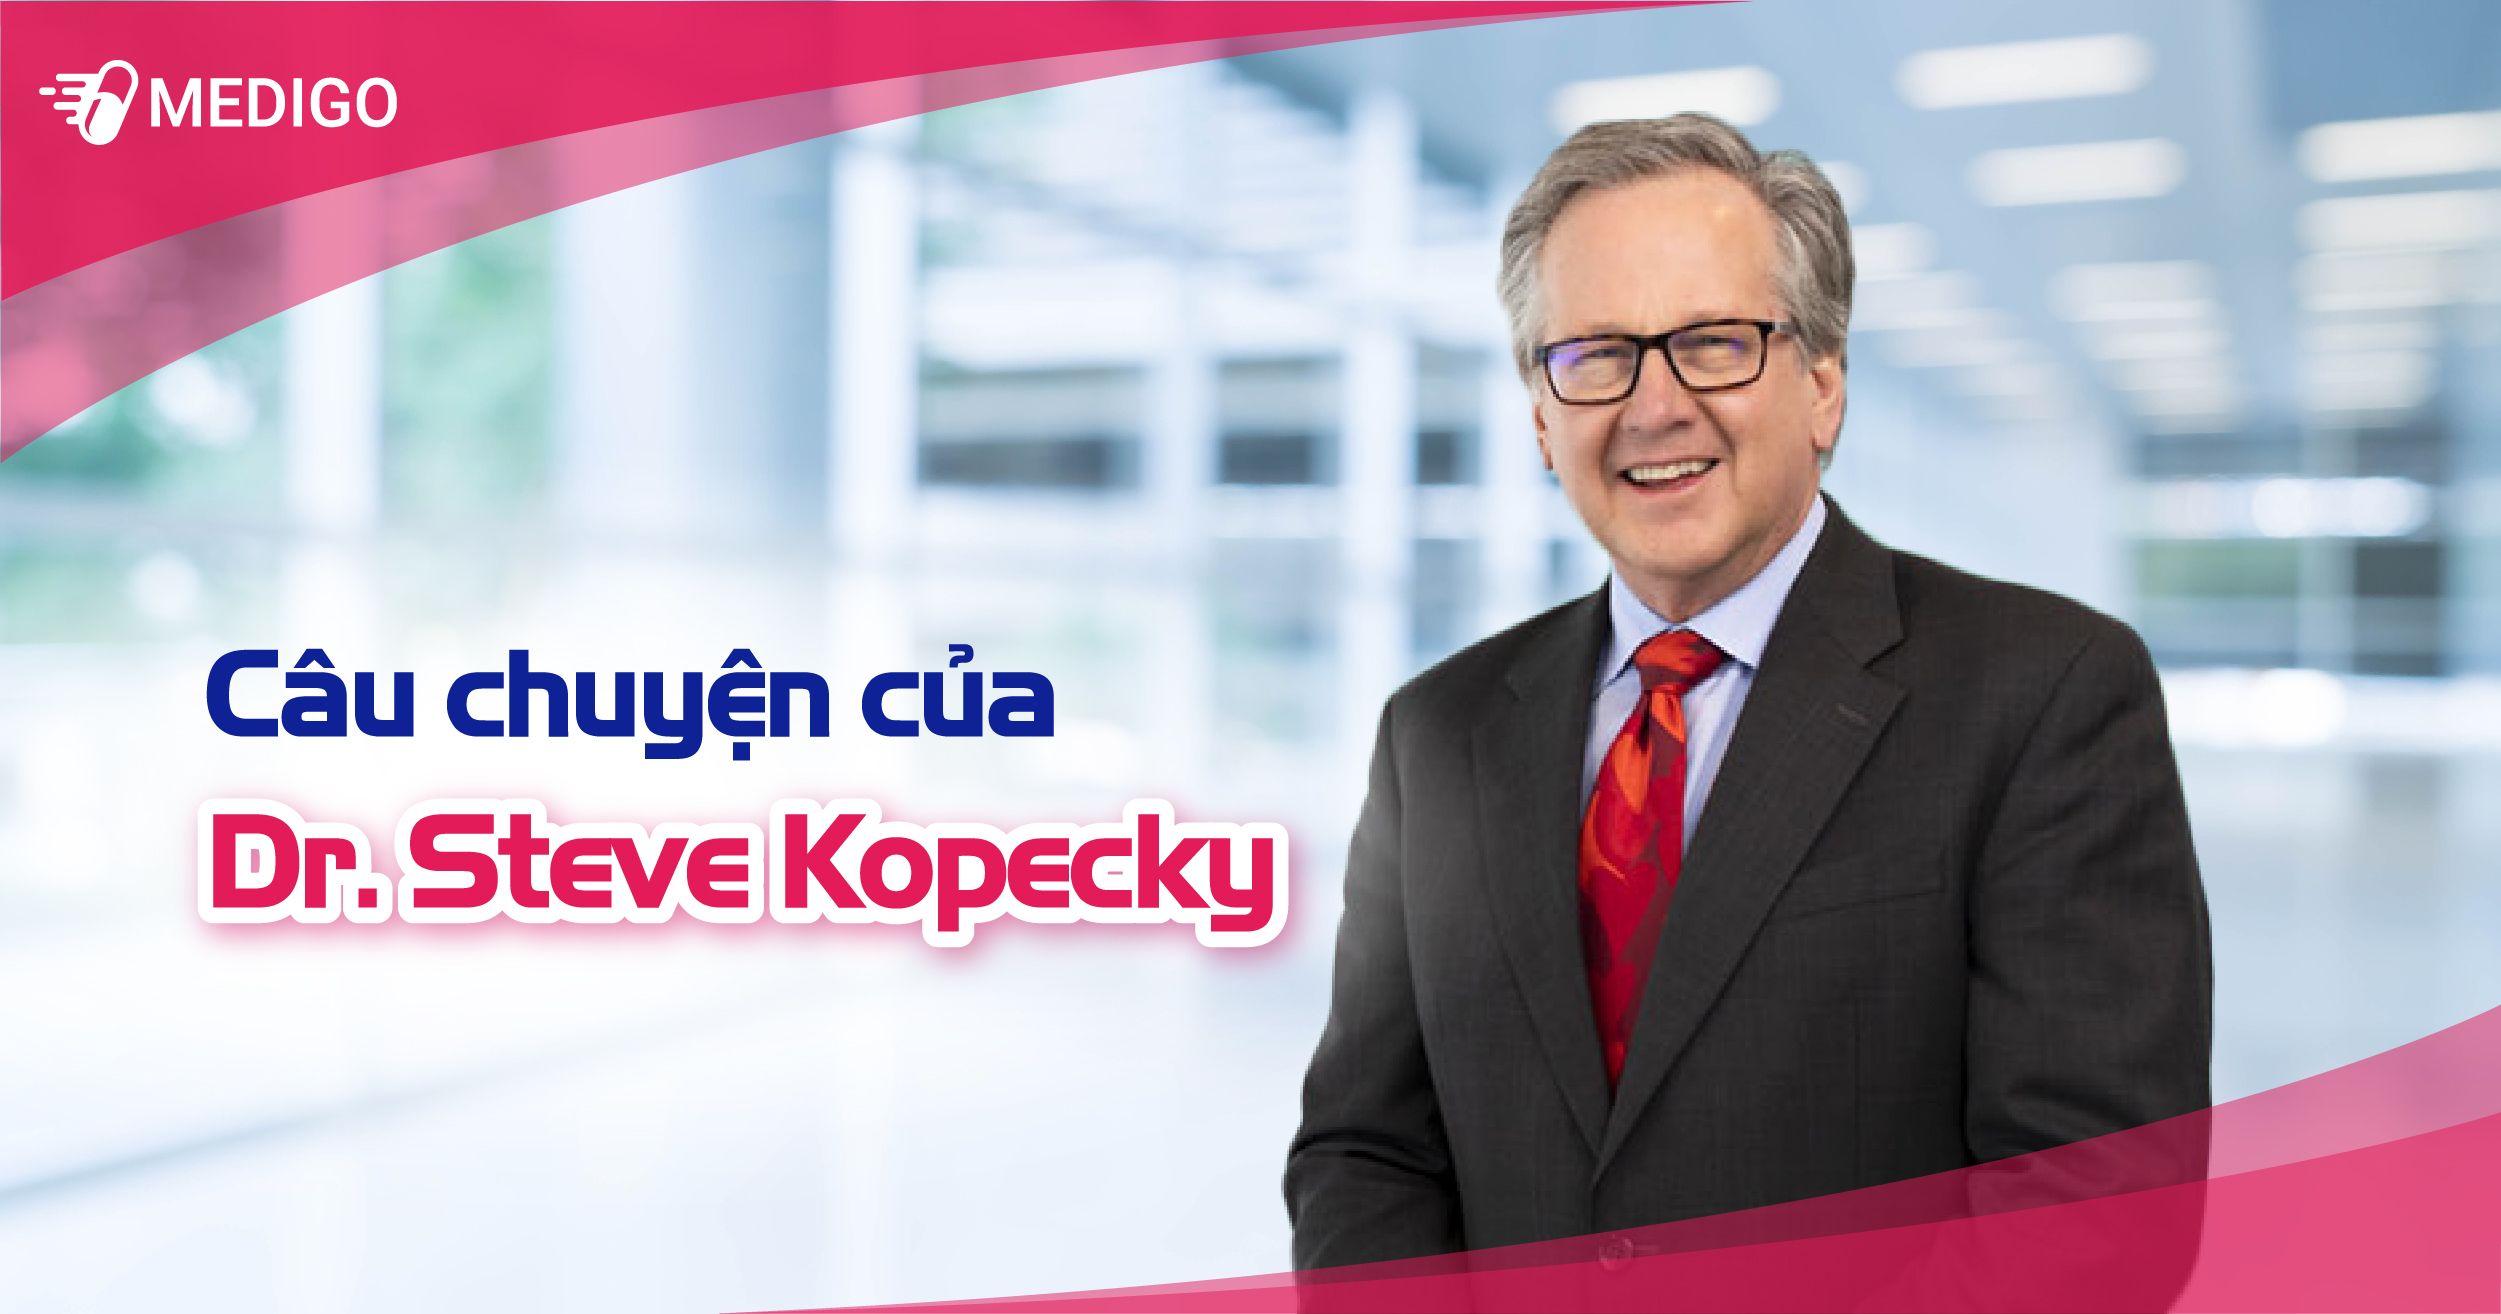 Cau-chuyen-cua-Steve-Kopecky.jpg